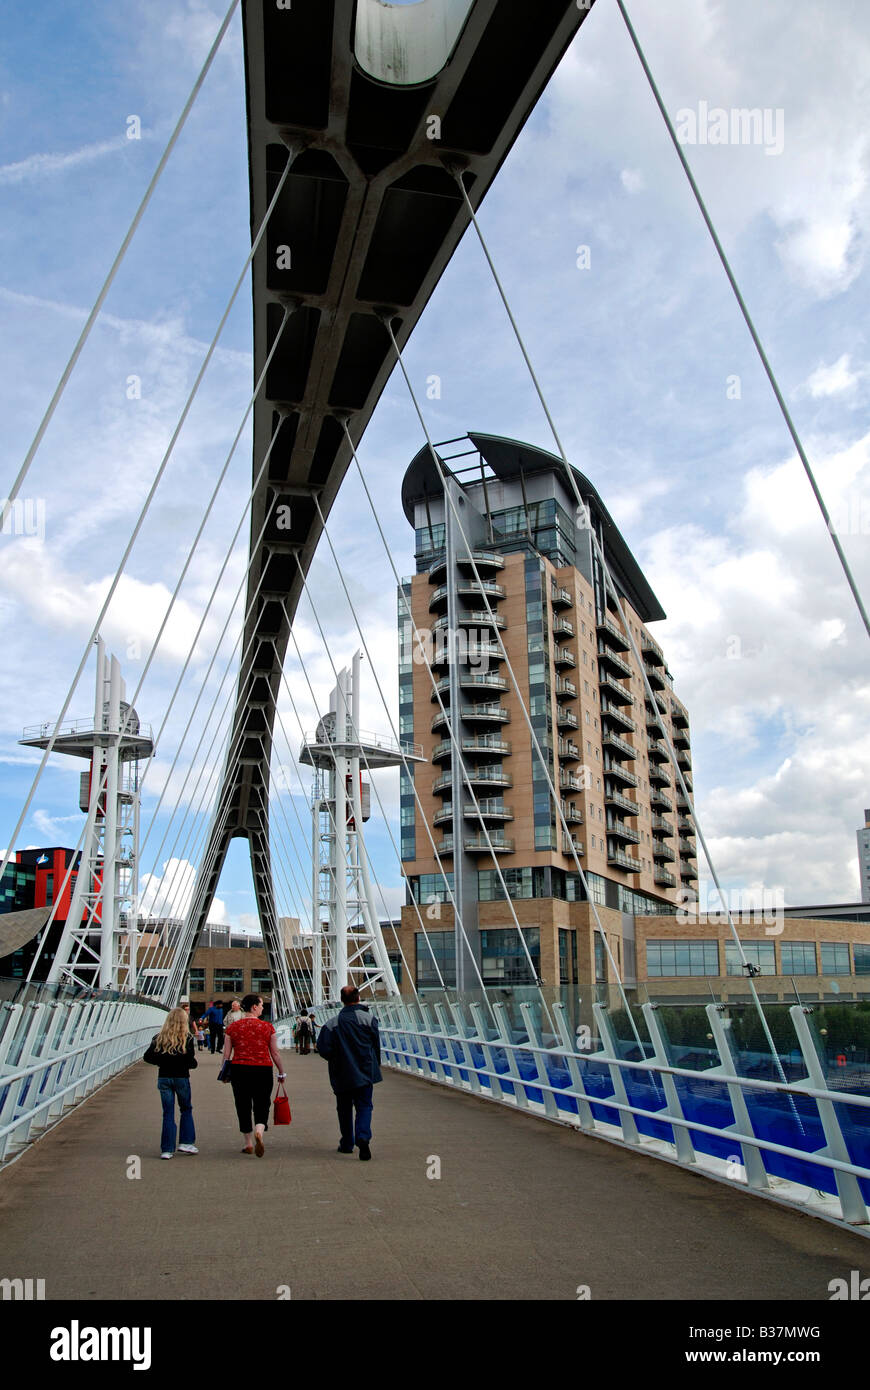 Le millenium bridge menant au lowry centre à Salford Quays, Manchester, Angleterre, Royaume-Uni Banque D'Images